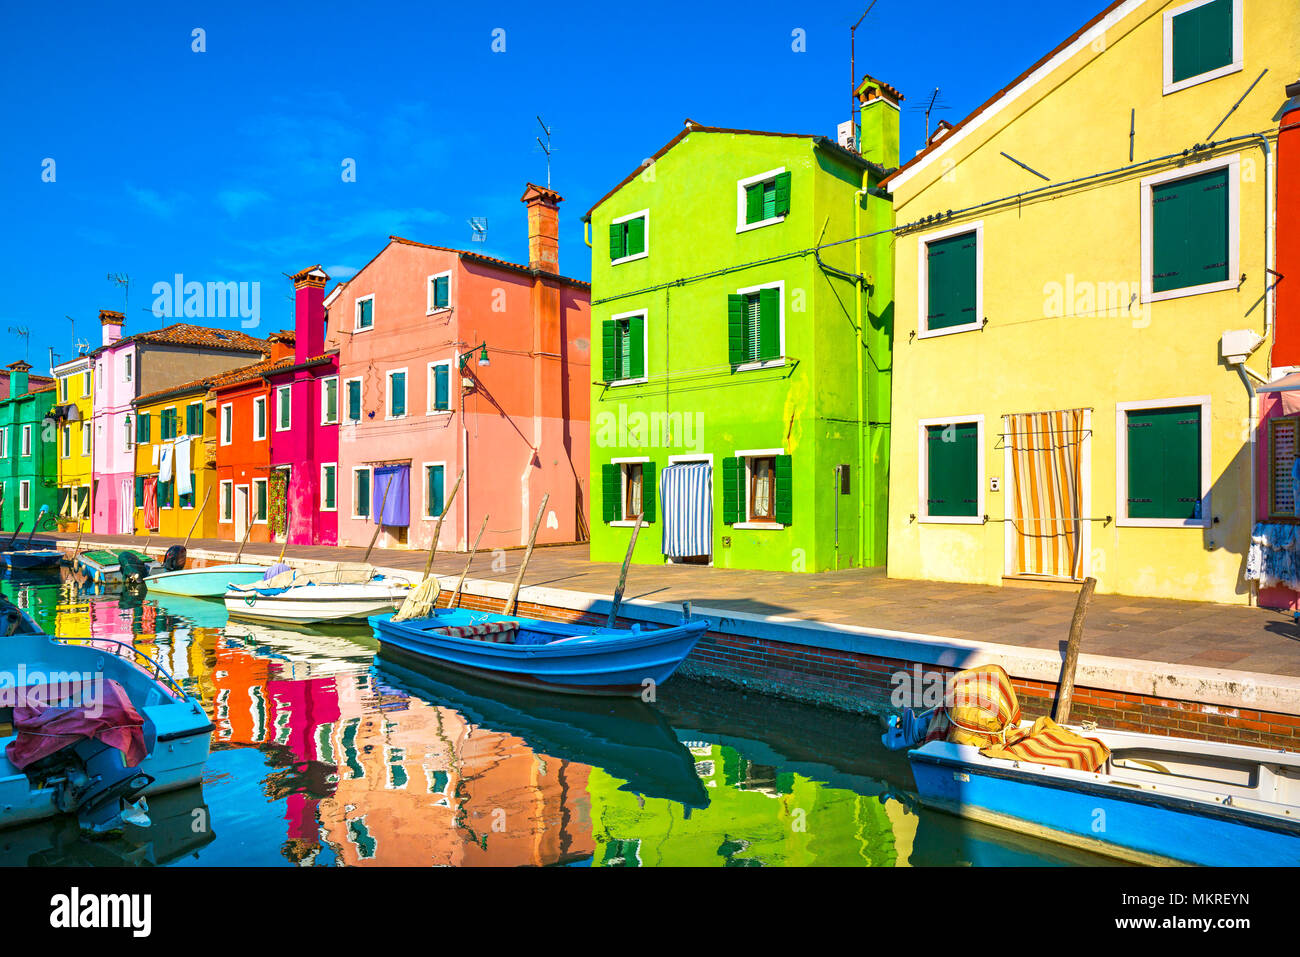 Wahrzeichen von Venedig, Burano Insel Kanal, bunte Häuser und Boote, Italien. Europa Stockfoto